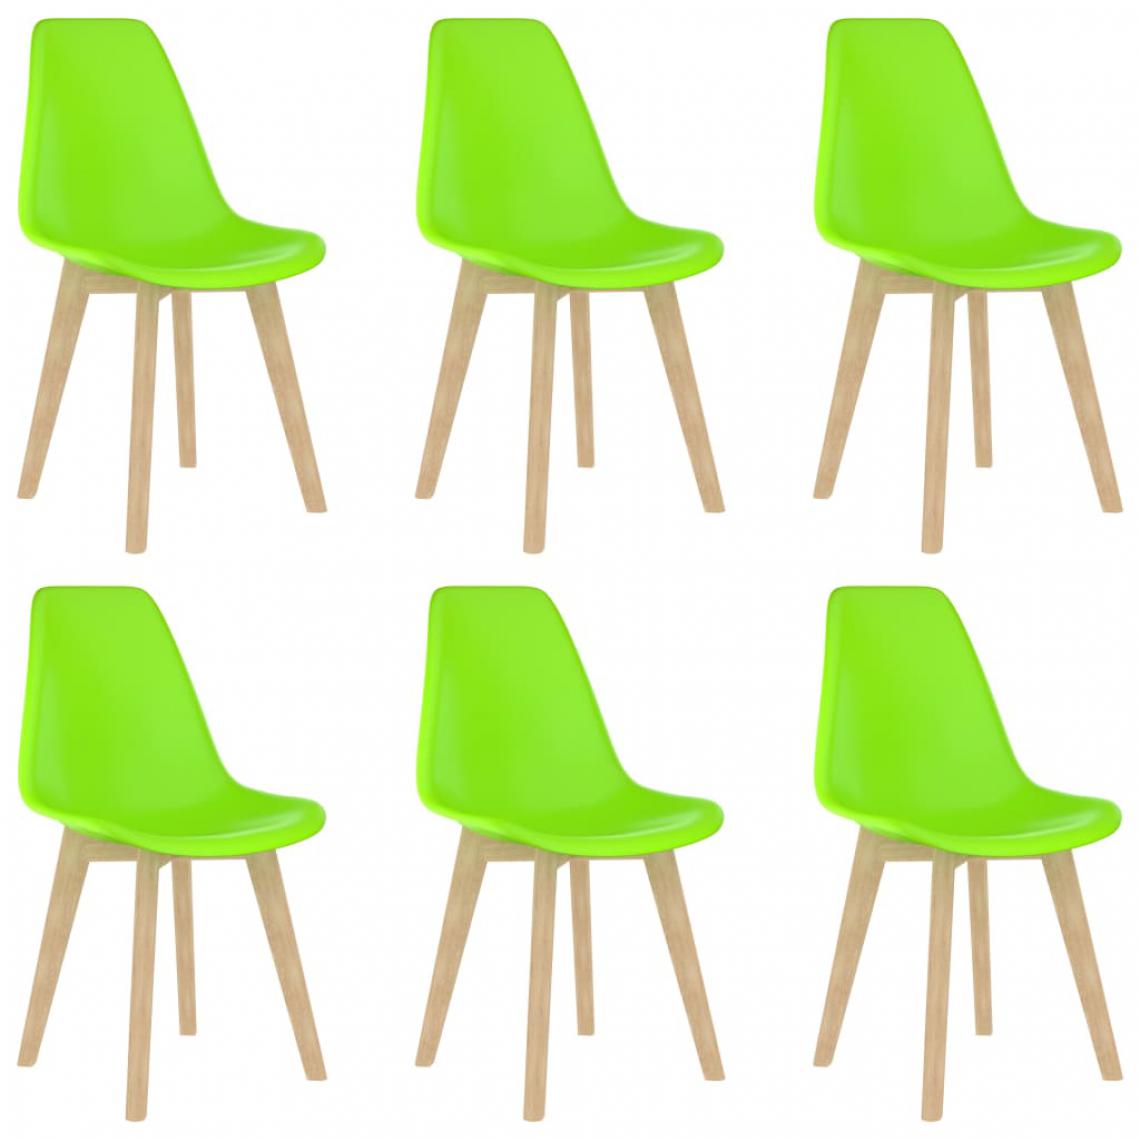 Icaverne - sublime Fauteuils et chaises edition Berlin Chaises de salle à manger 6 pcs Vert Plastique - Chaises